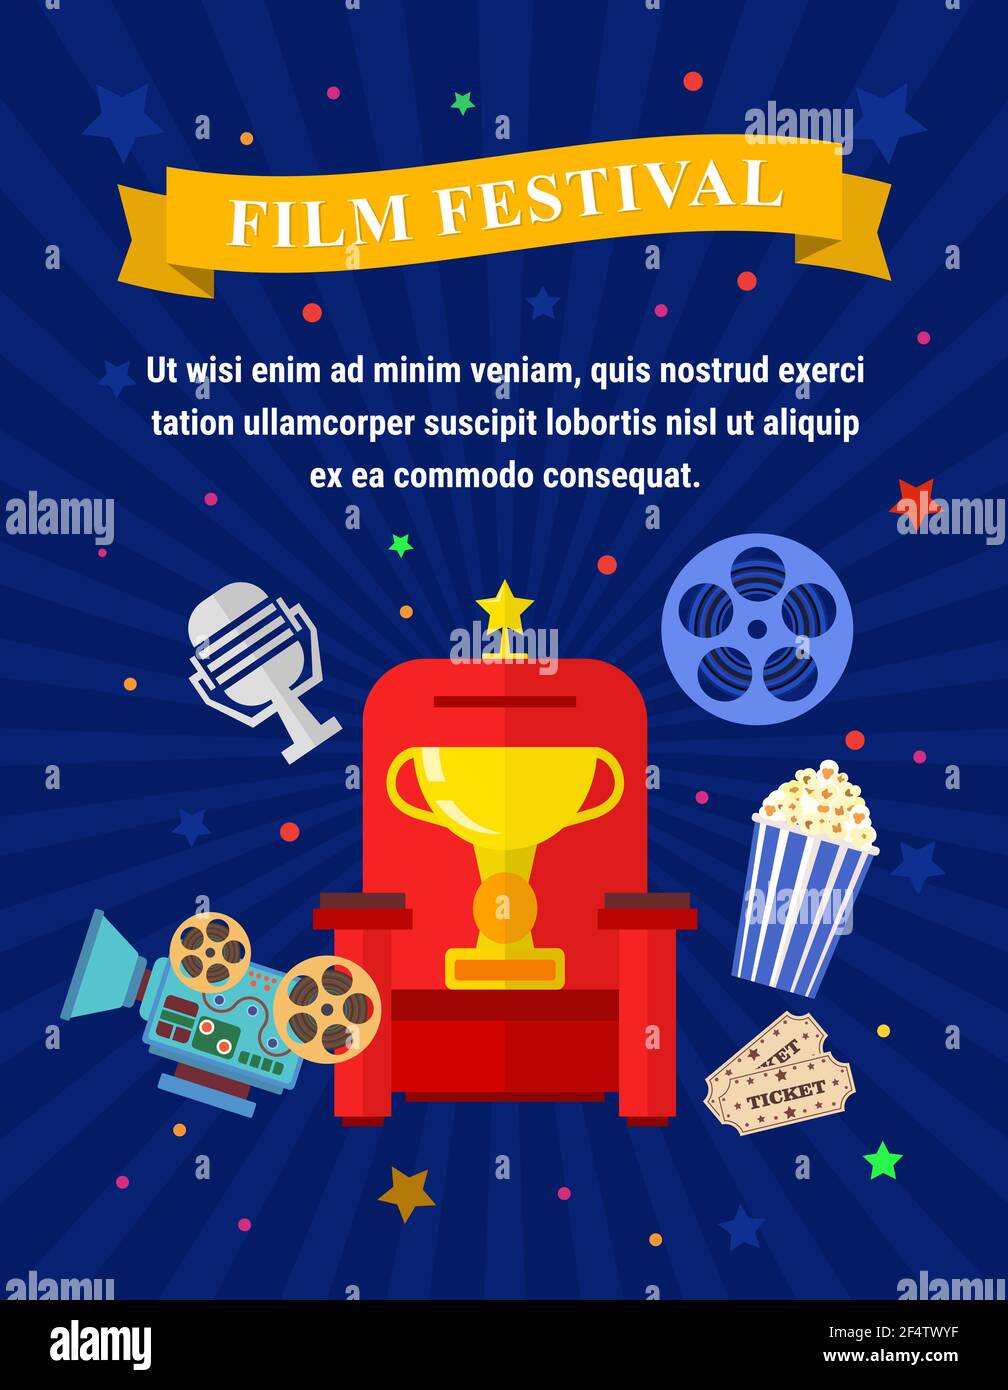 Elementi Vector Flat Movie con poltrona, premio, macchina fotografica, popcorn e un microfono. Cinema Concept. Illustrazione Vettoriale